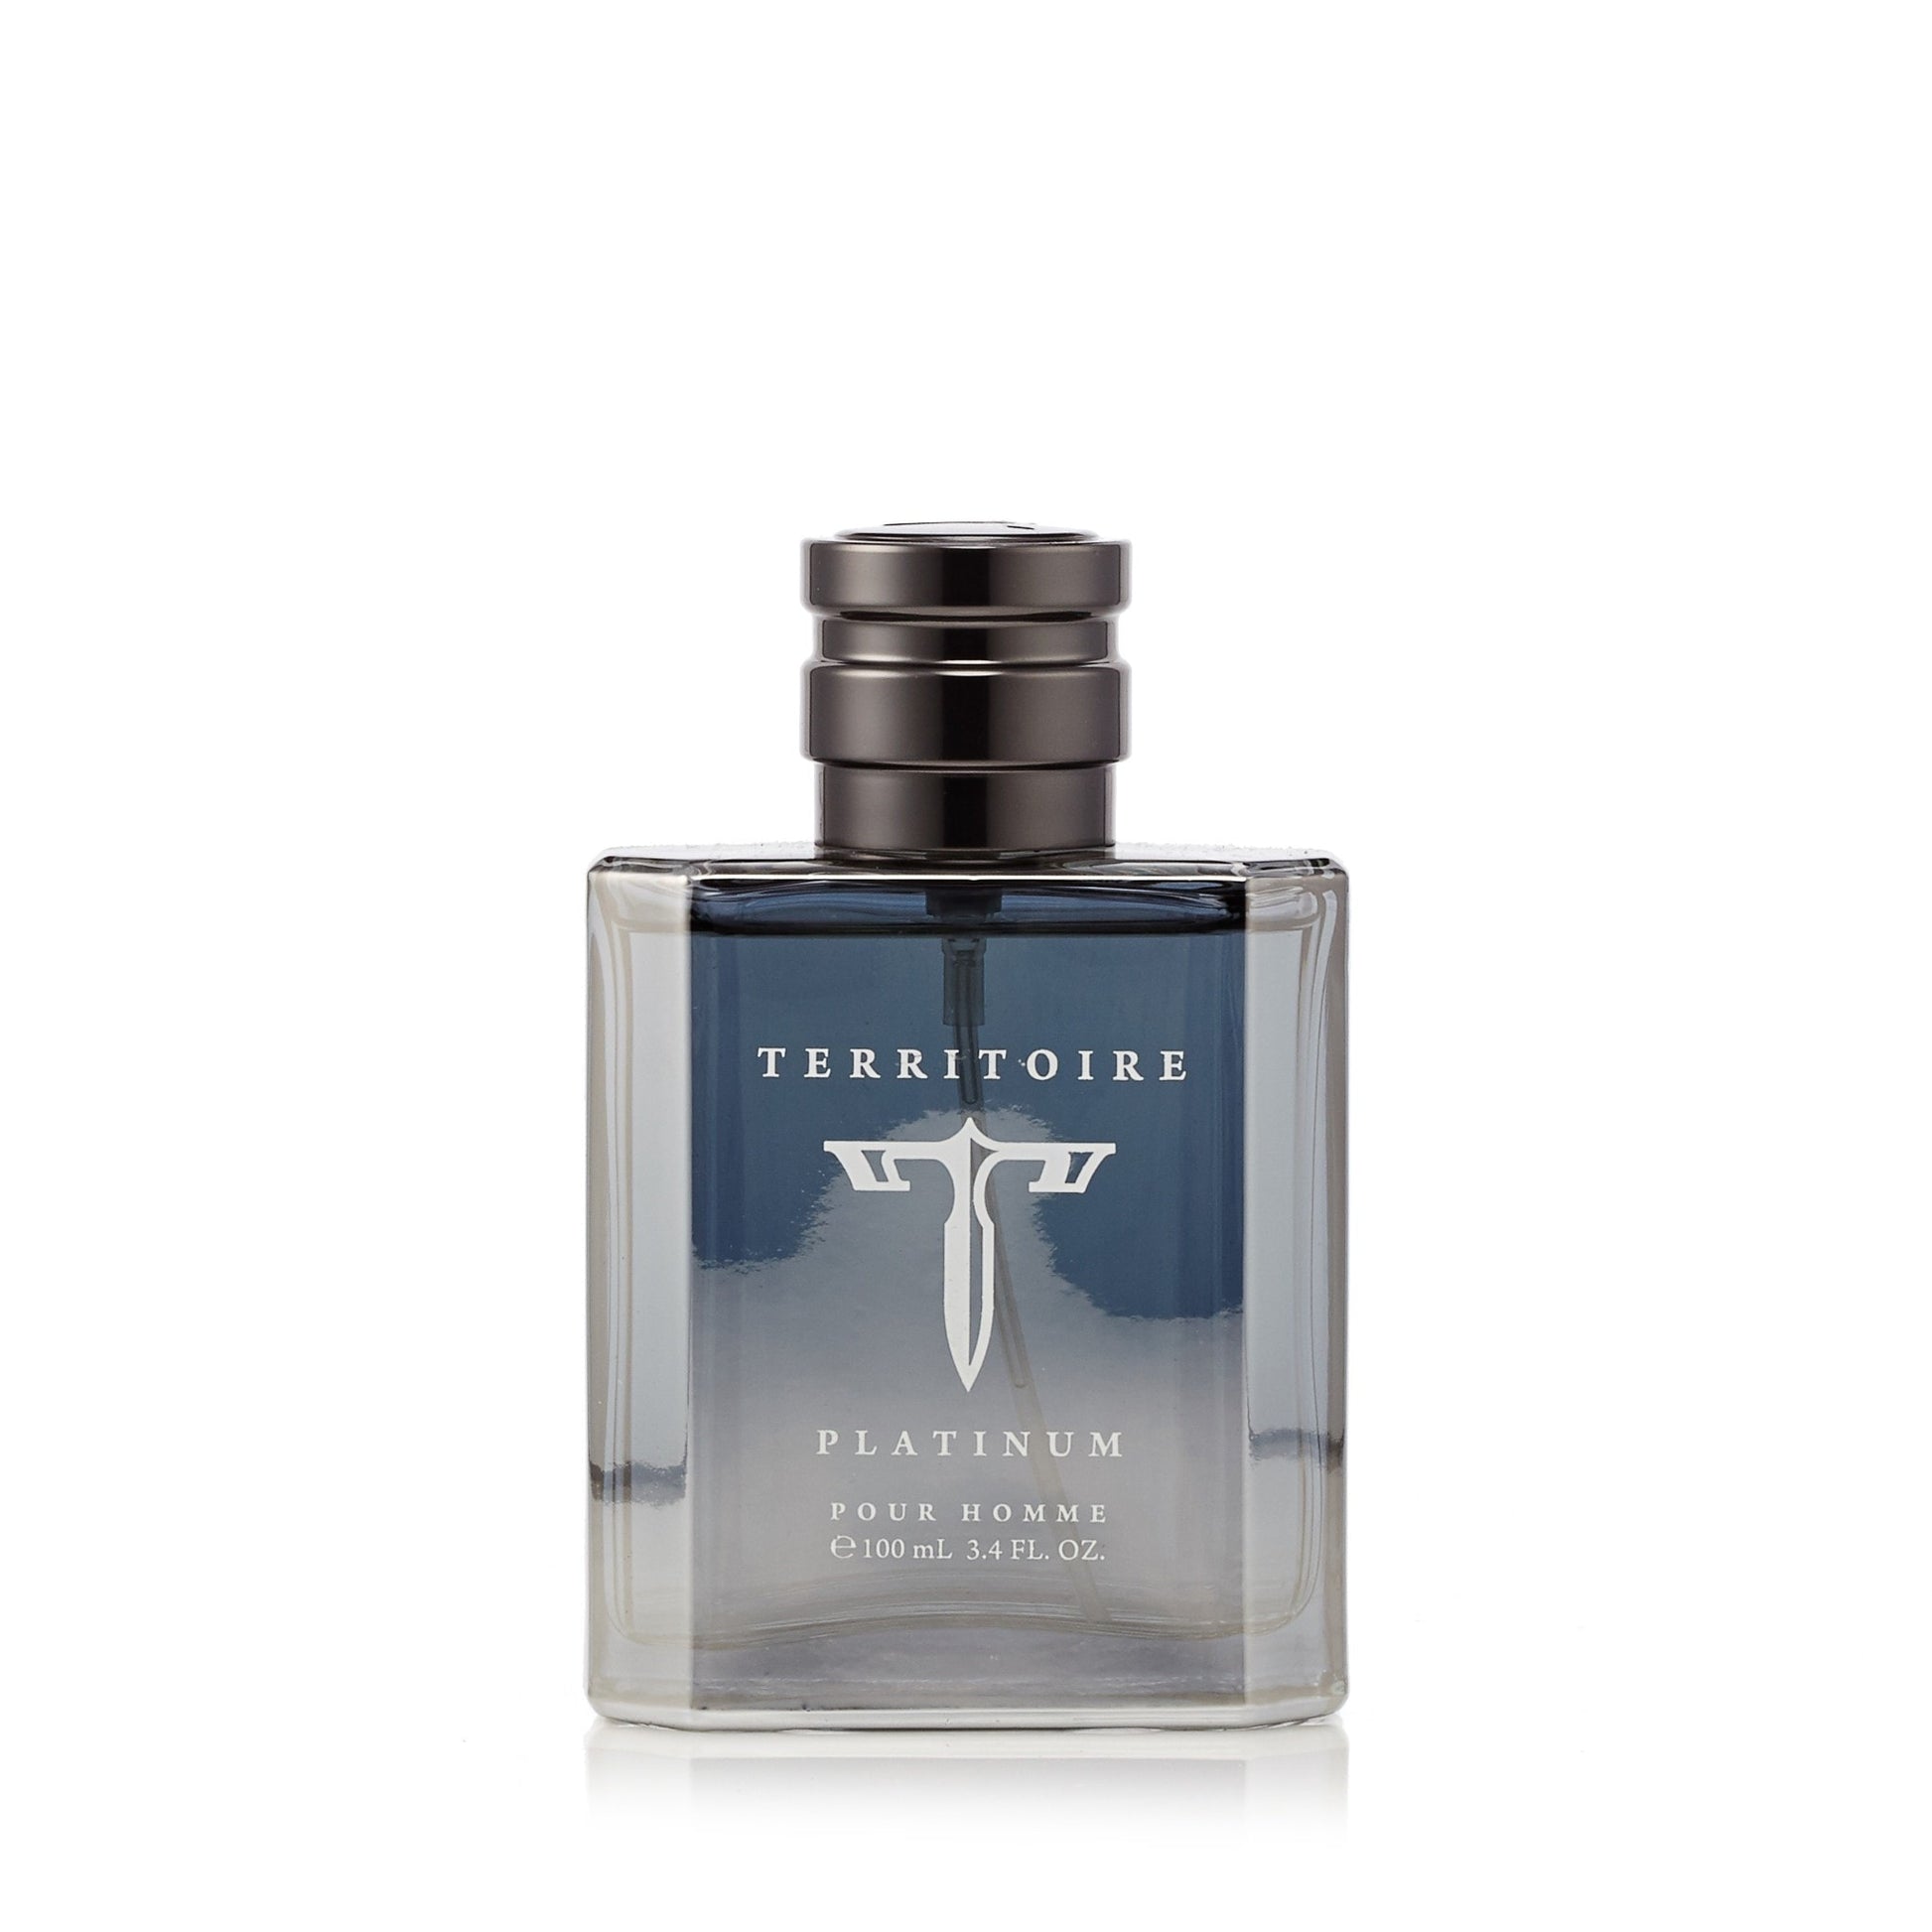 Territoire Platinum by YZY Perfume 3.4 oz Eau de Parfum Spray for Men